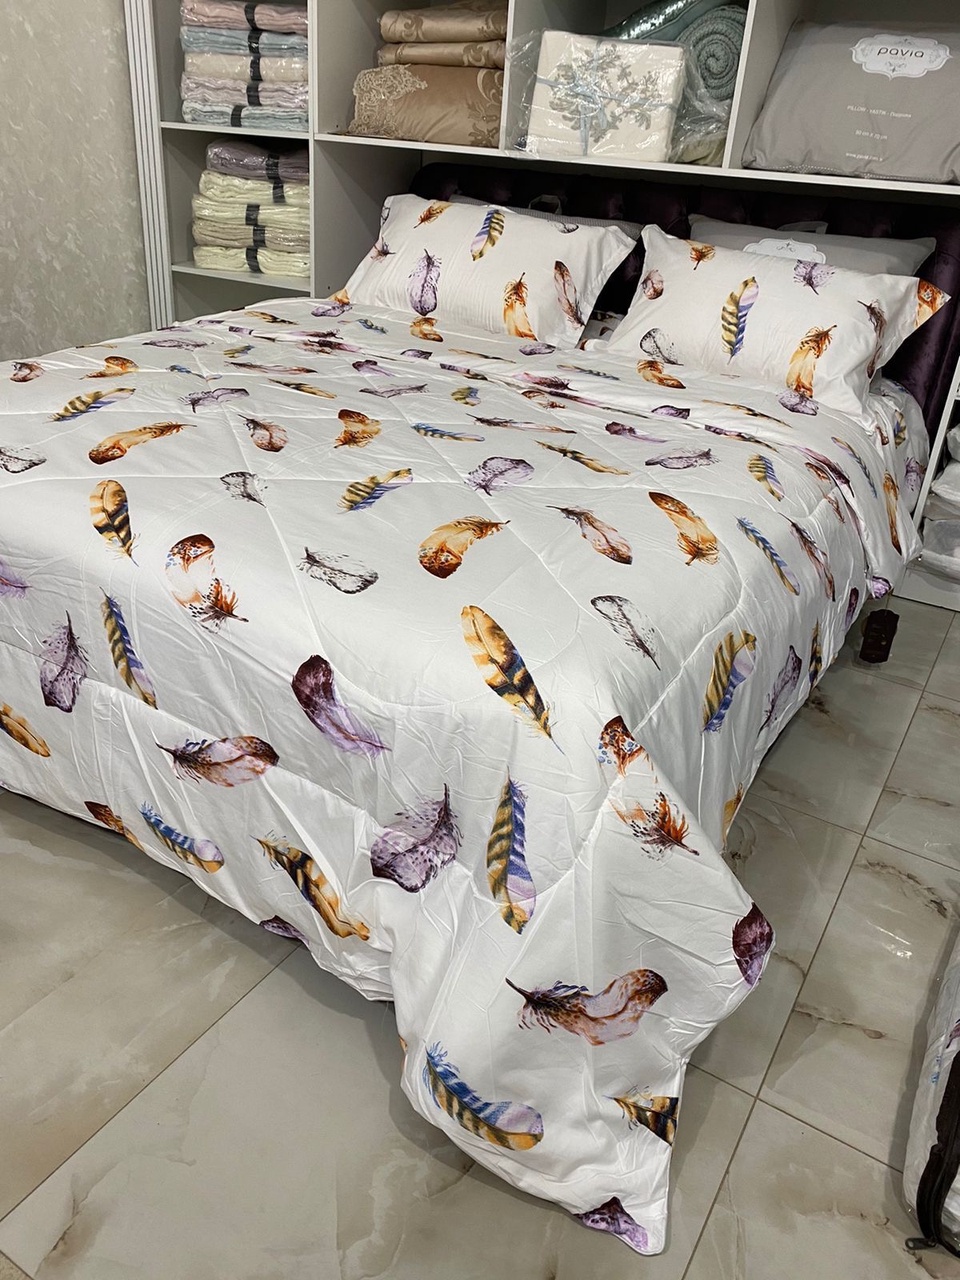 Межсезонное одеяло плюс комплект постельного белья . - 5 500 ₽, заказать онлайн.